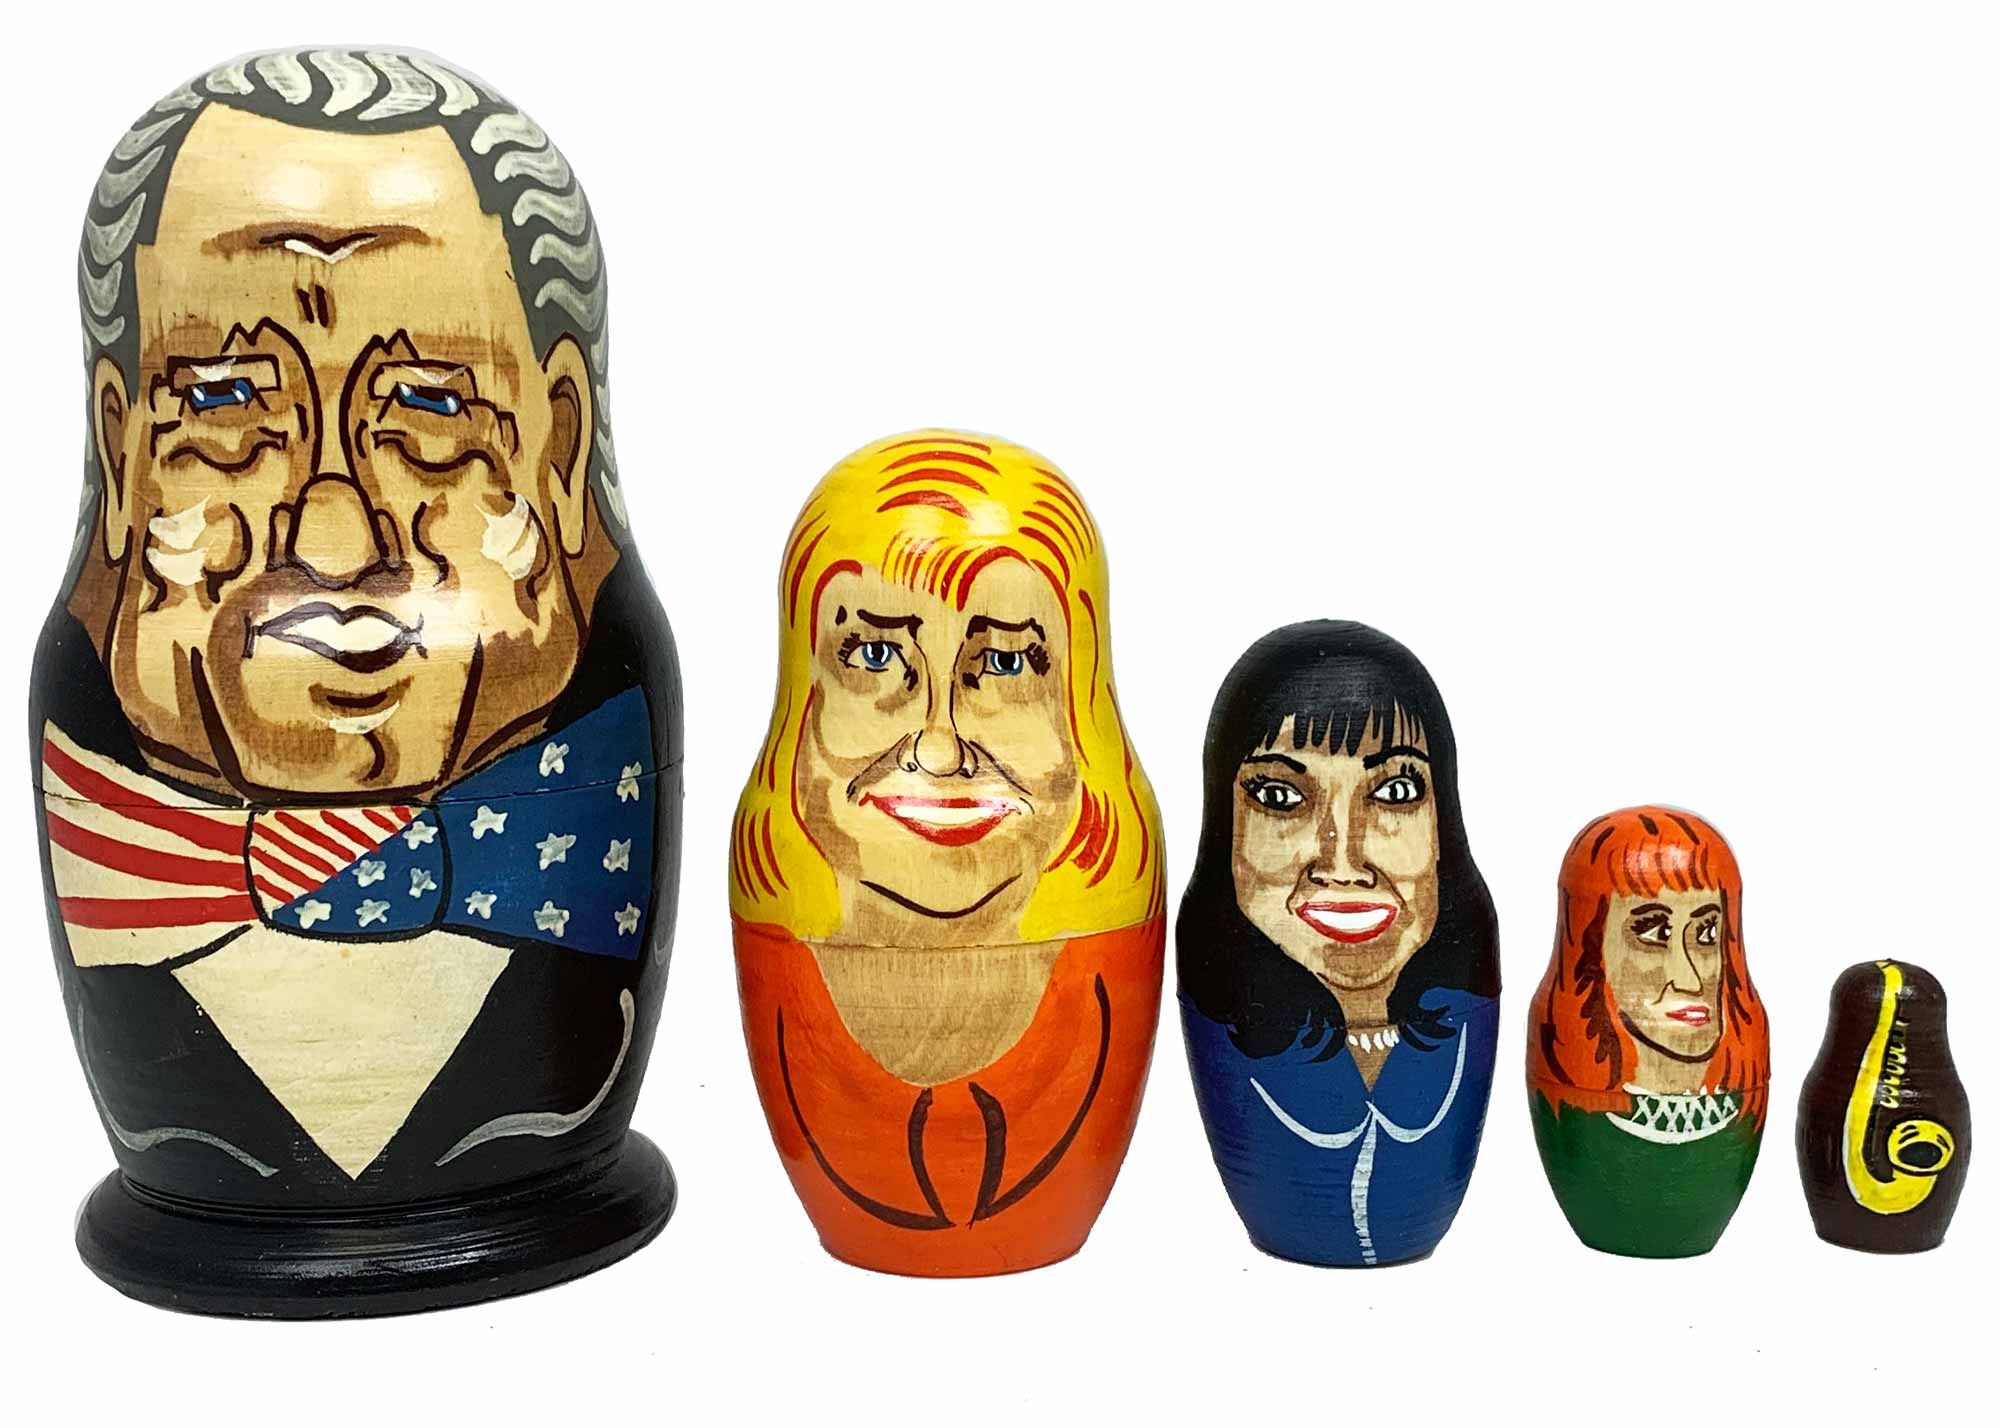 Buy Vintage Bill Clinton / Monica Lewinsky Nesting Doll 5pc./6" at GoldenCockerel.com